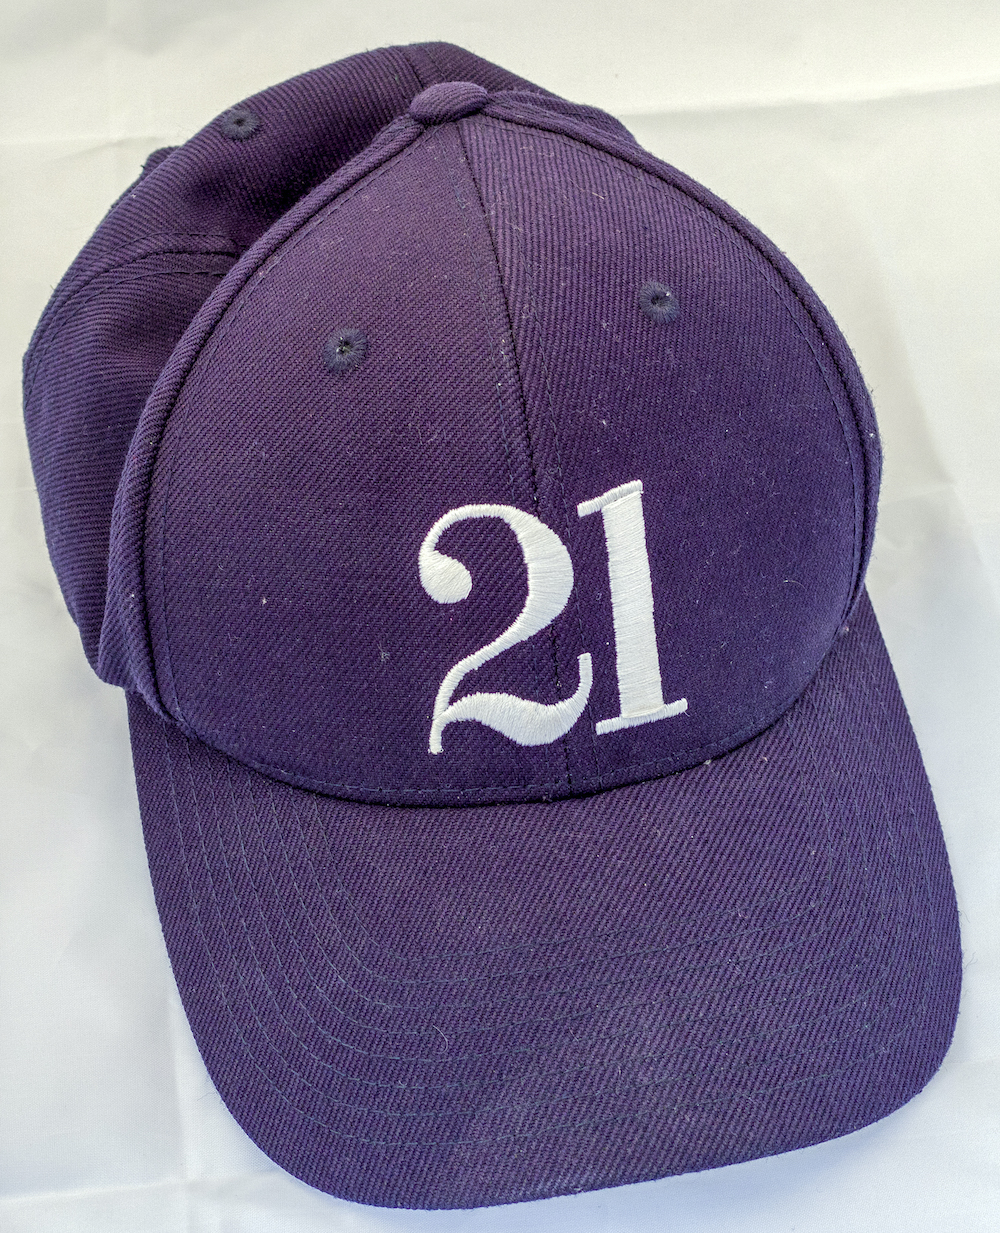 21 Hat